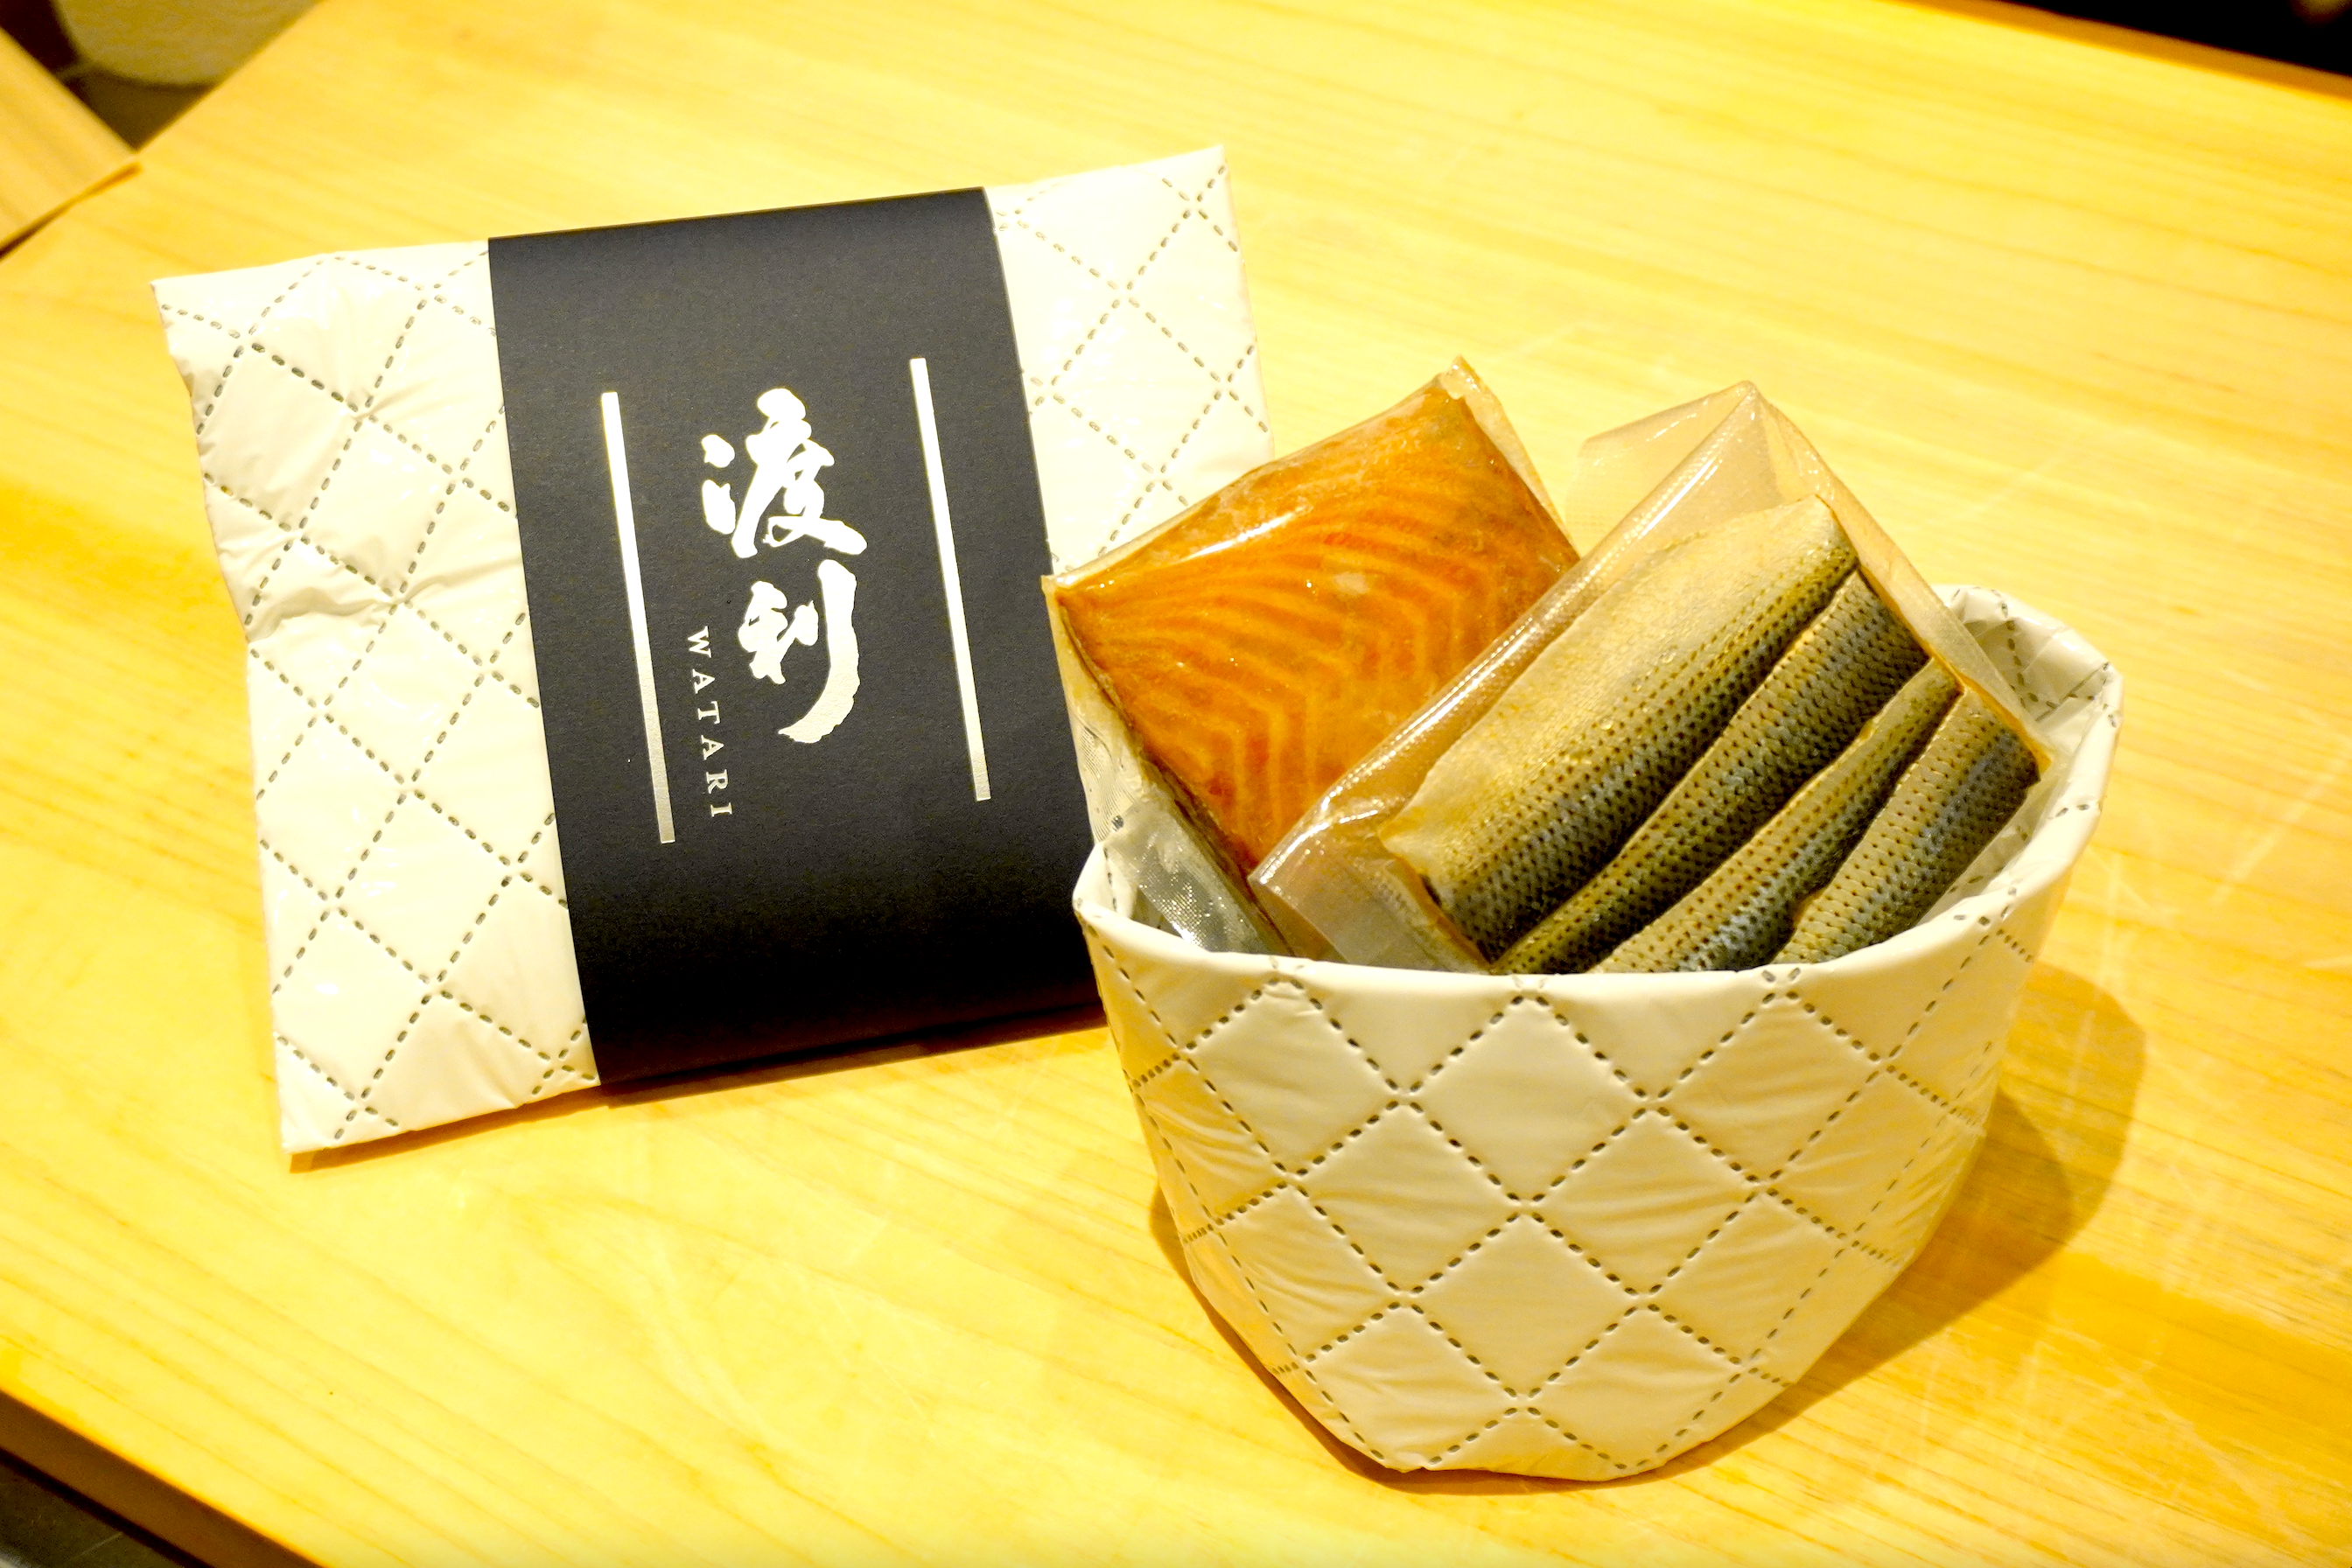 櫻桃鮭魚和小哈達拼盤（櫻桃鱒魚 x 1 小哈達 x 1）